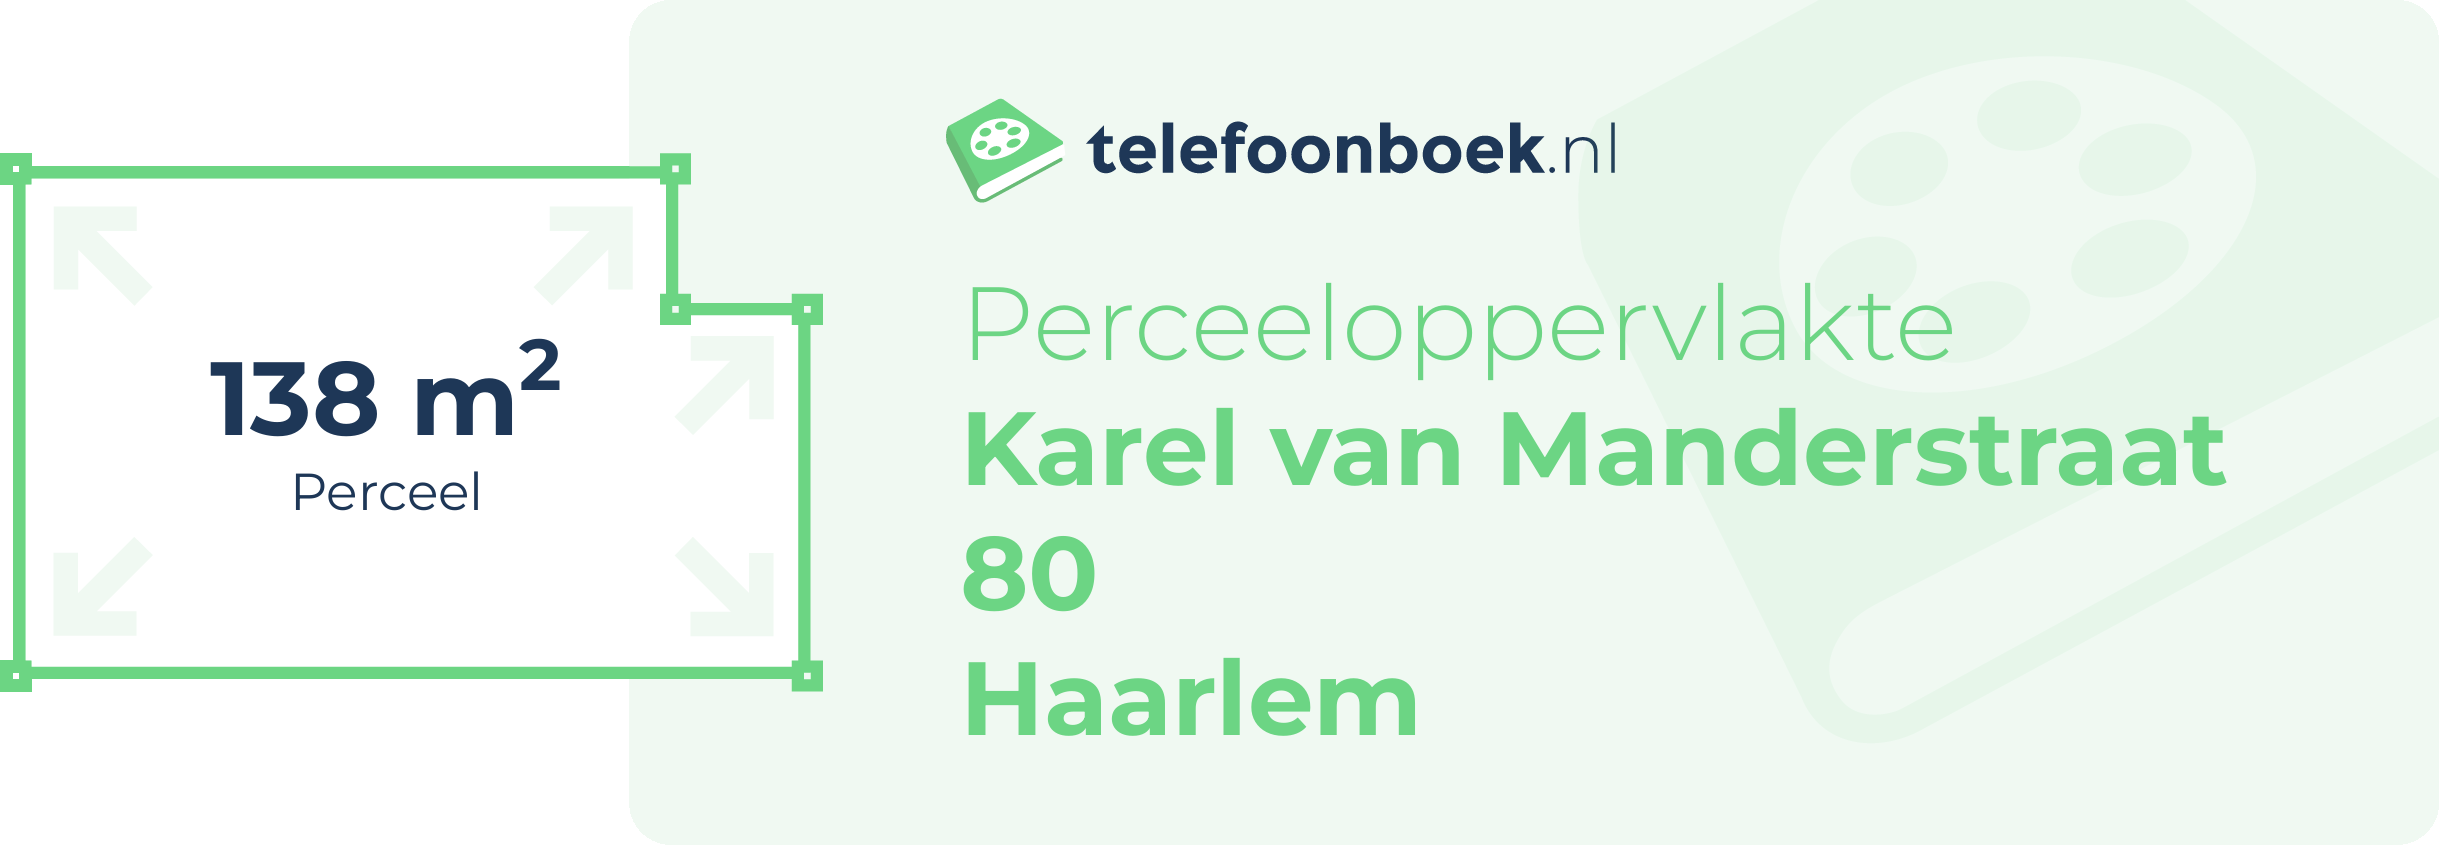 Perceeloppervlakte Karel Van Manderstraat 80 Haarlem